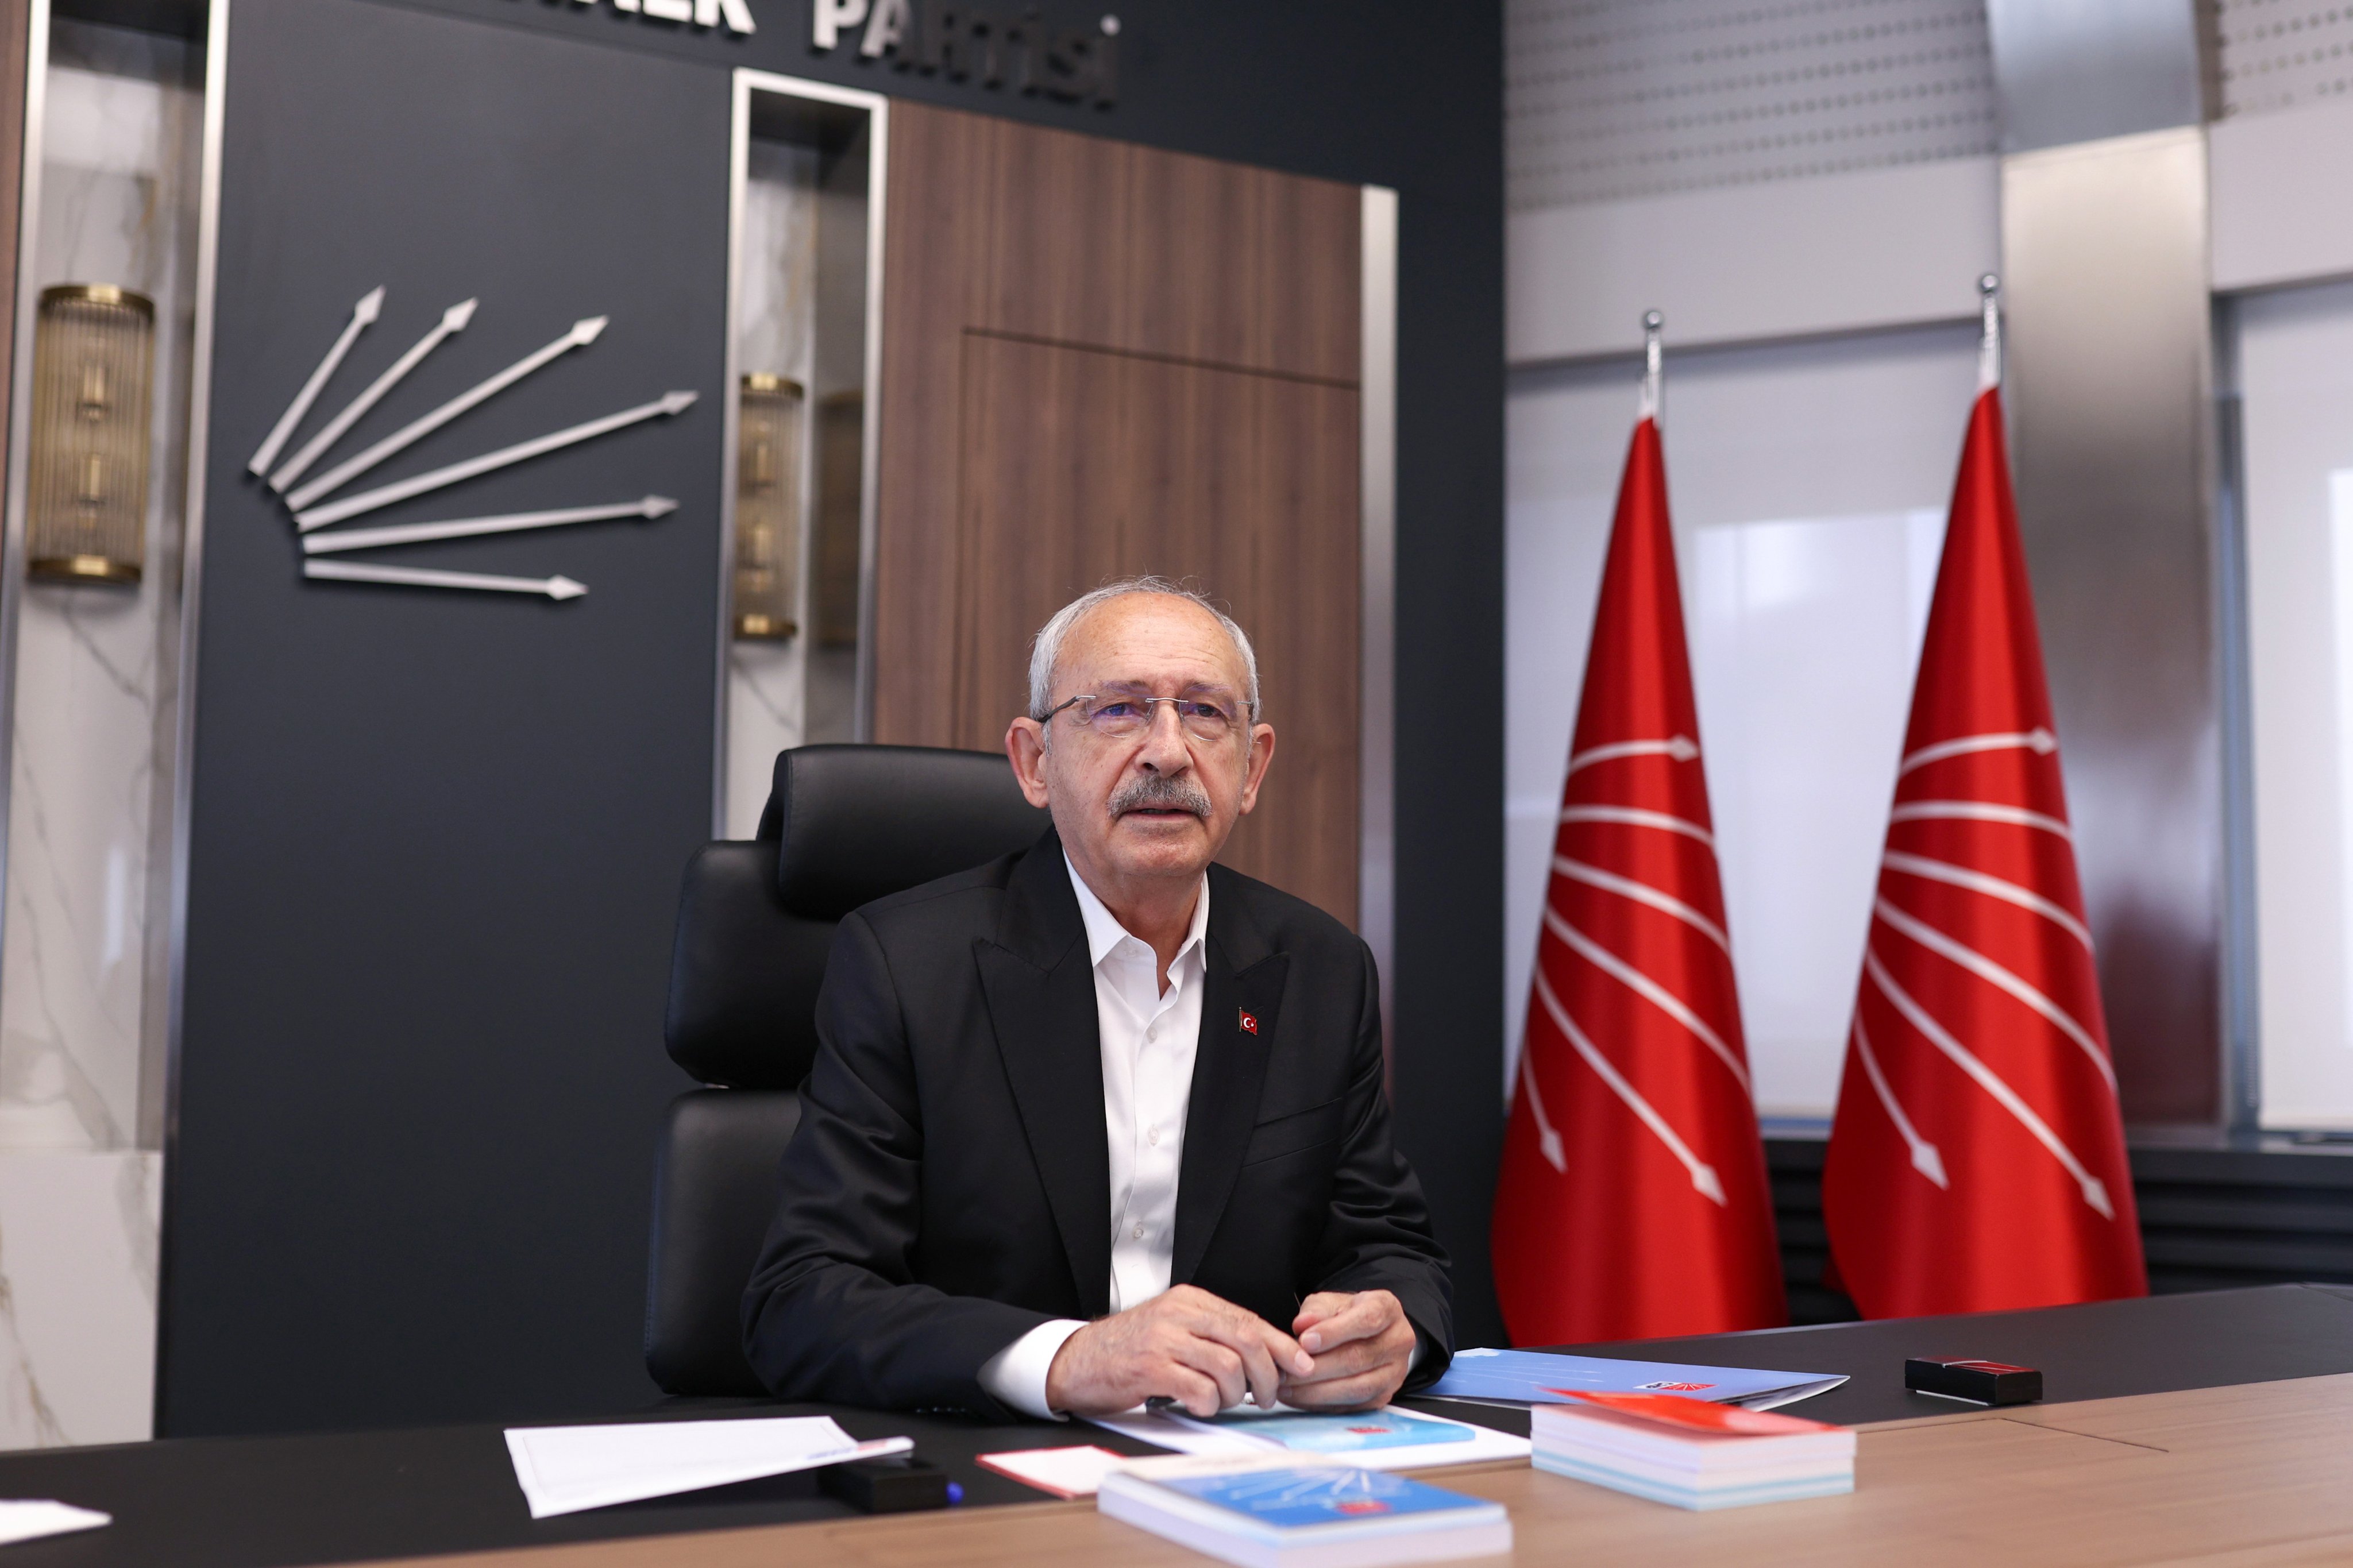 Fatih Altaylı: Kılıçdaroğlu, "Bir daha Cumhurbaşkanlığı dahil, herhangi bir pozisyona aday olmayacağım" demiş